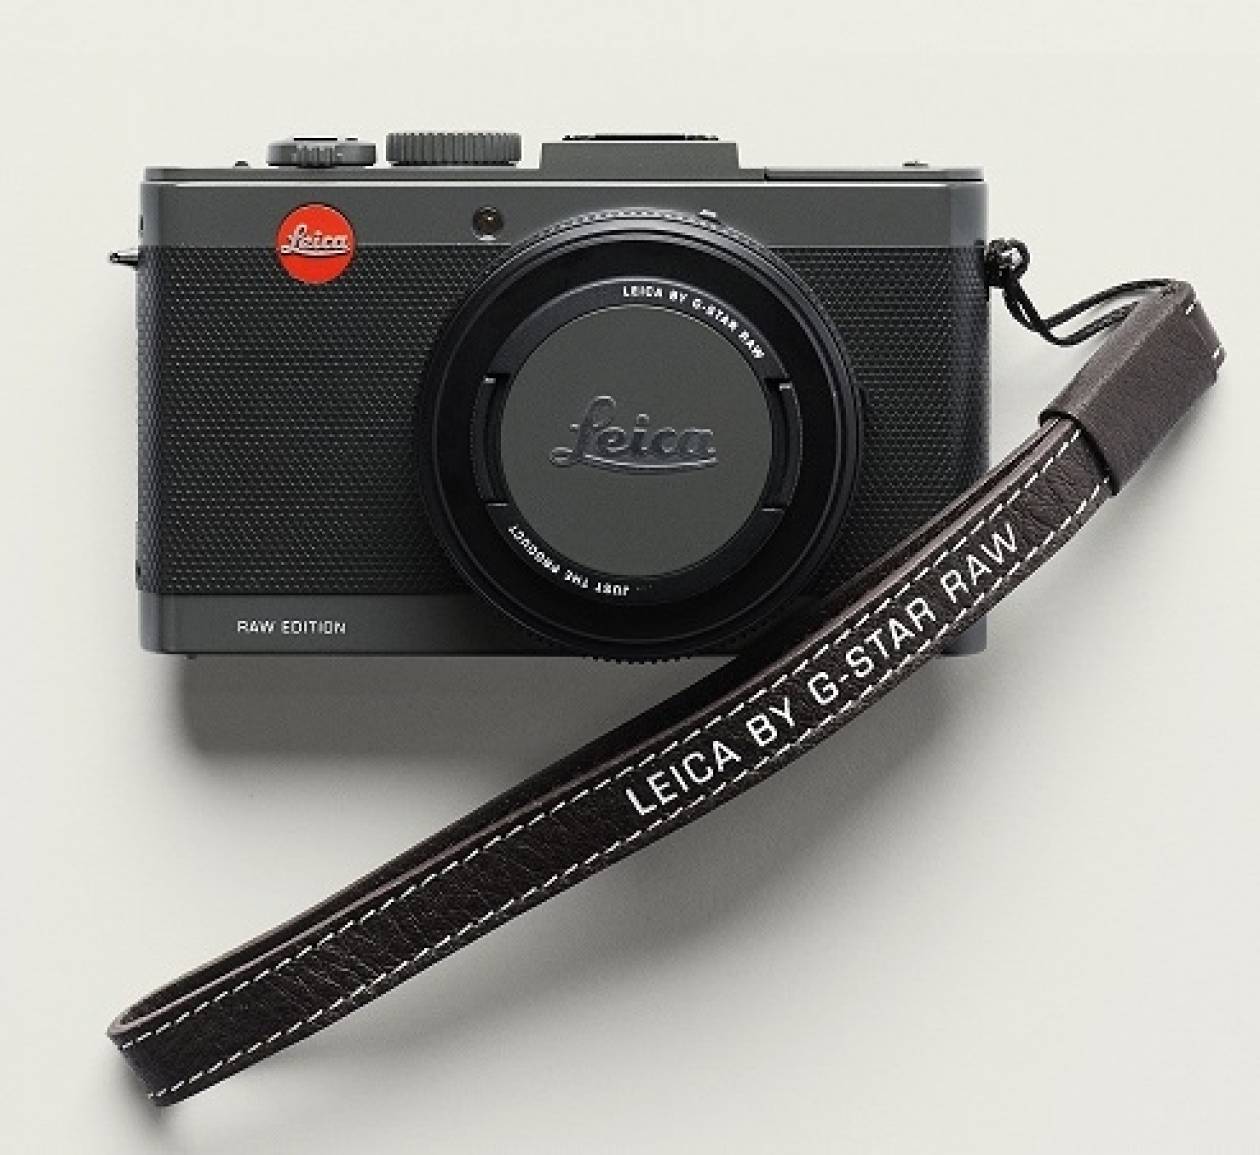 Η G-STAR παρουσιάζει την μοναδική φωτογραφική μηχανή RAW LEICA